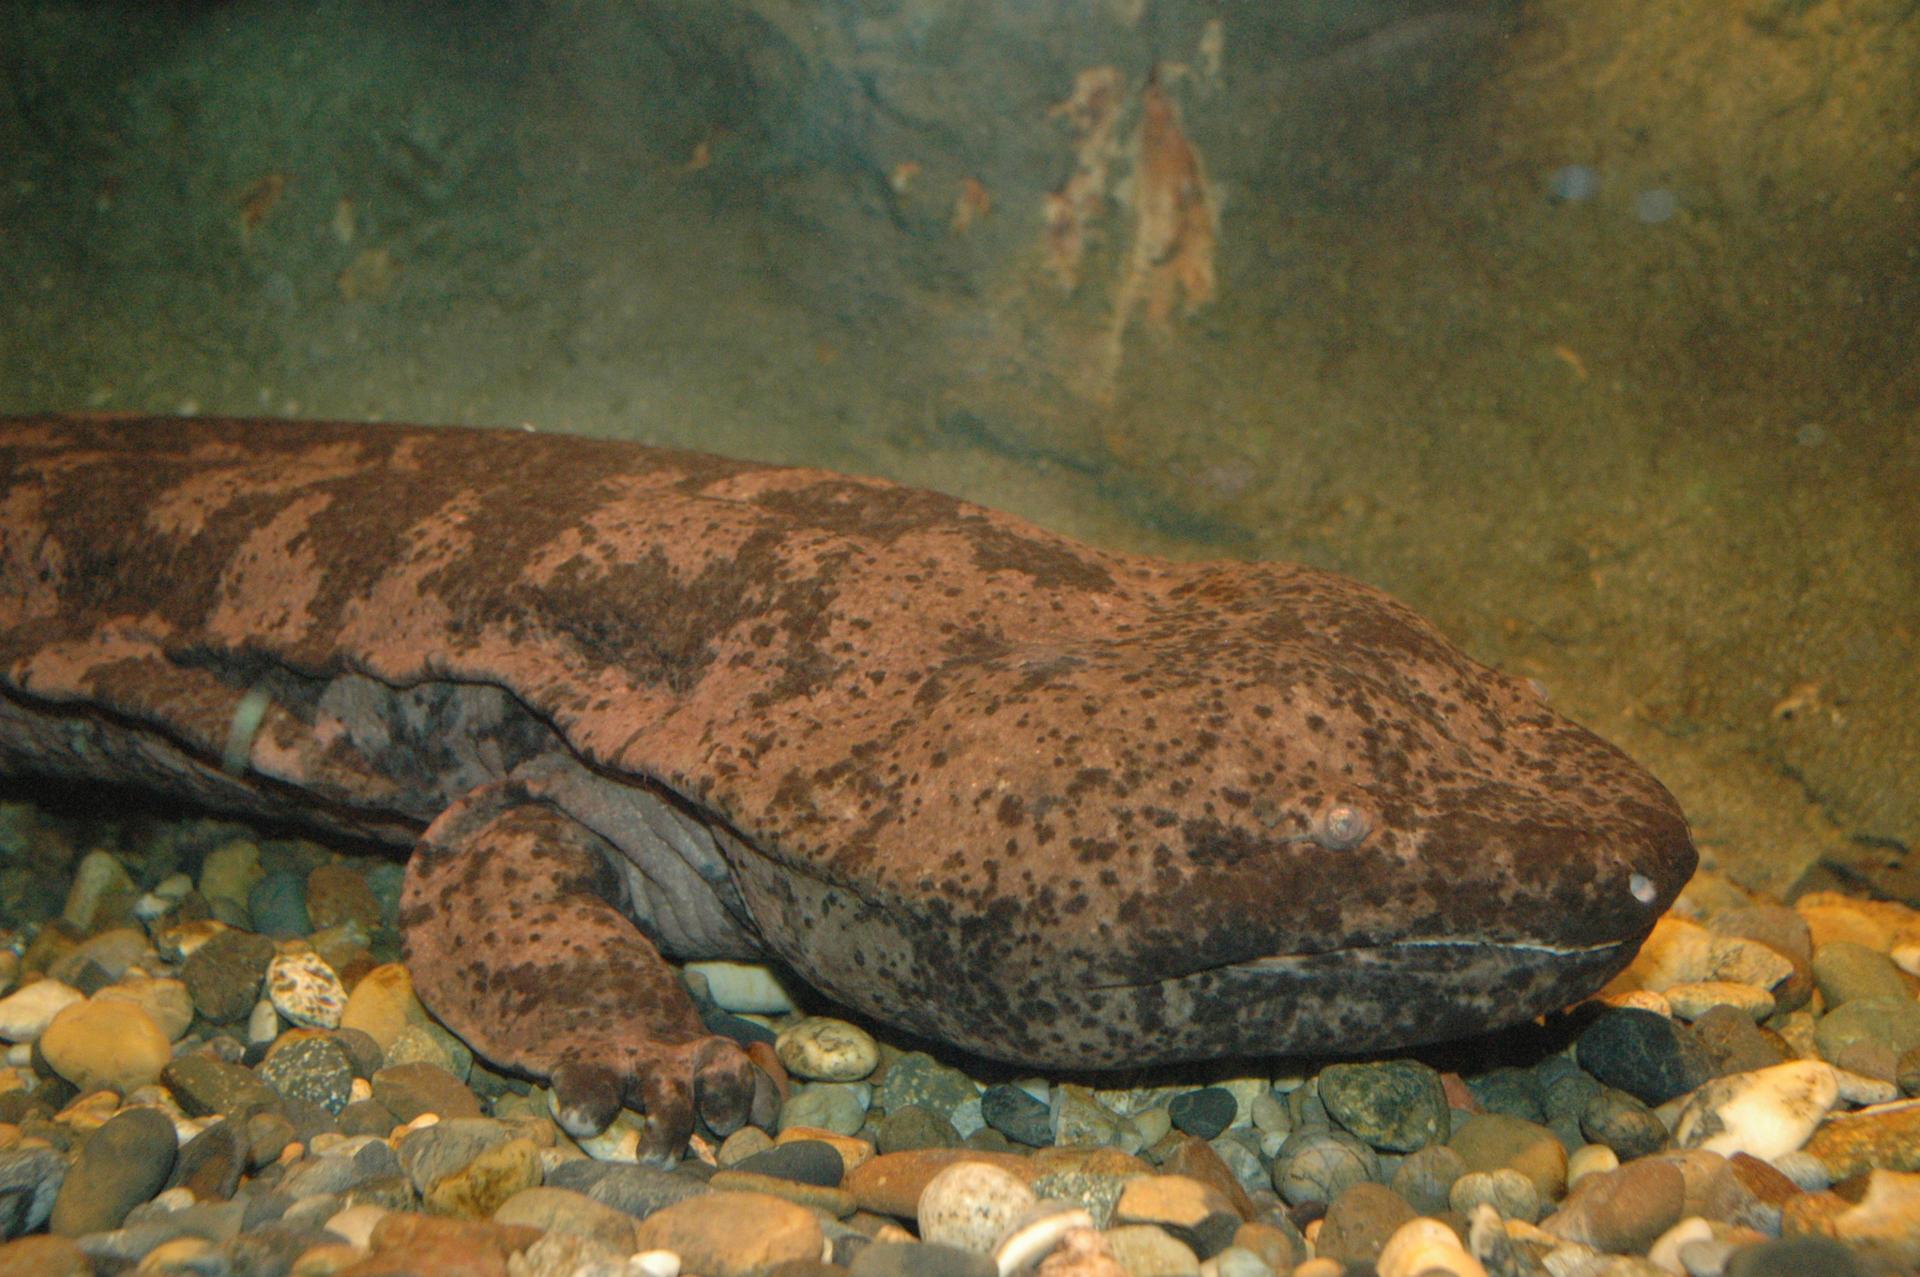 Salamandra gigante.